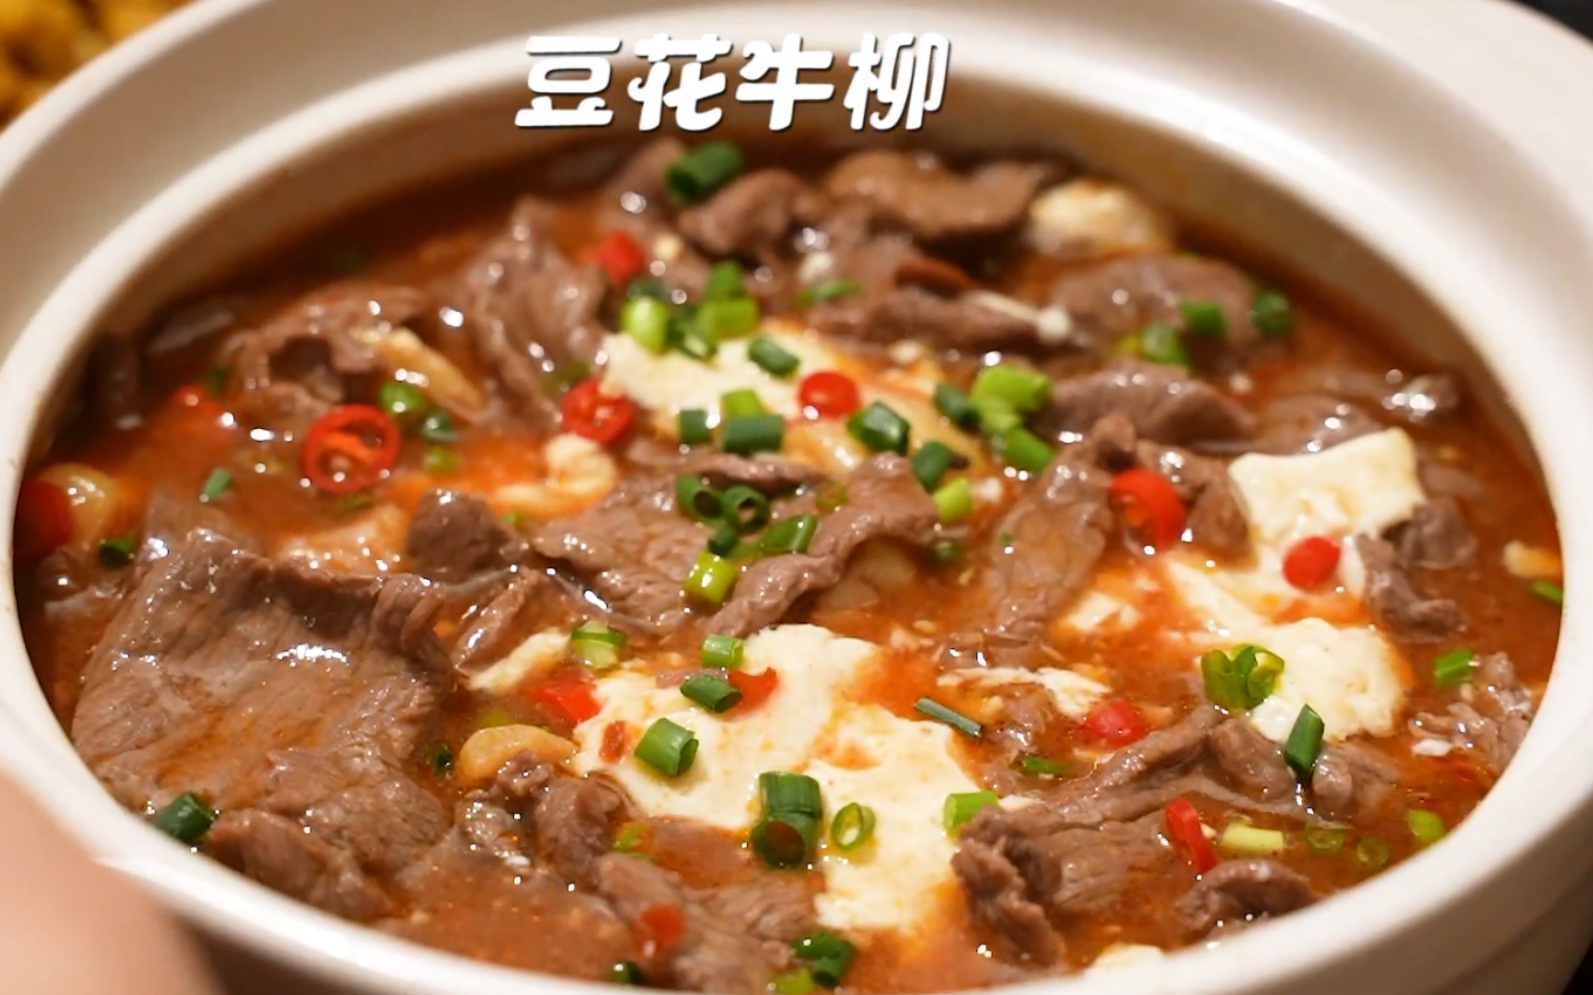 牛肉超级嫩的做法！再加上嫩滑滑的豆腐~拌着米饭吃太赞啦！